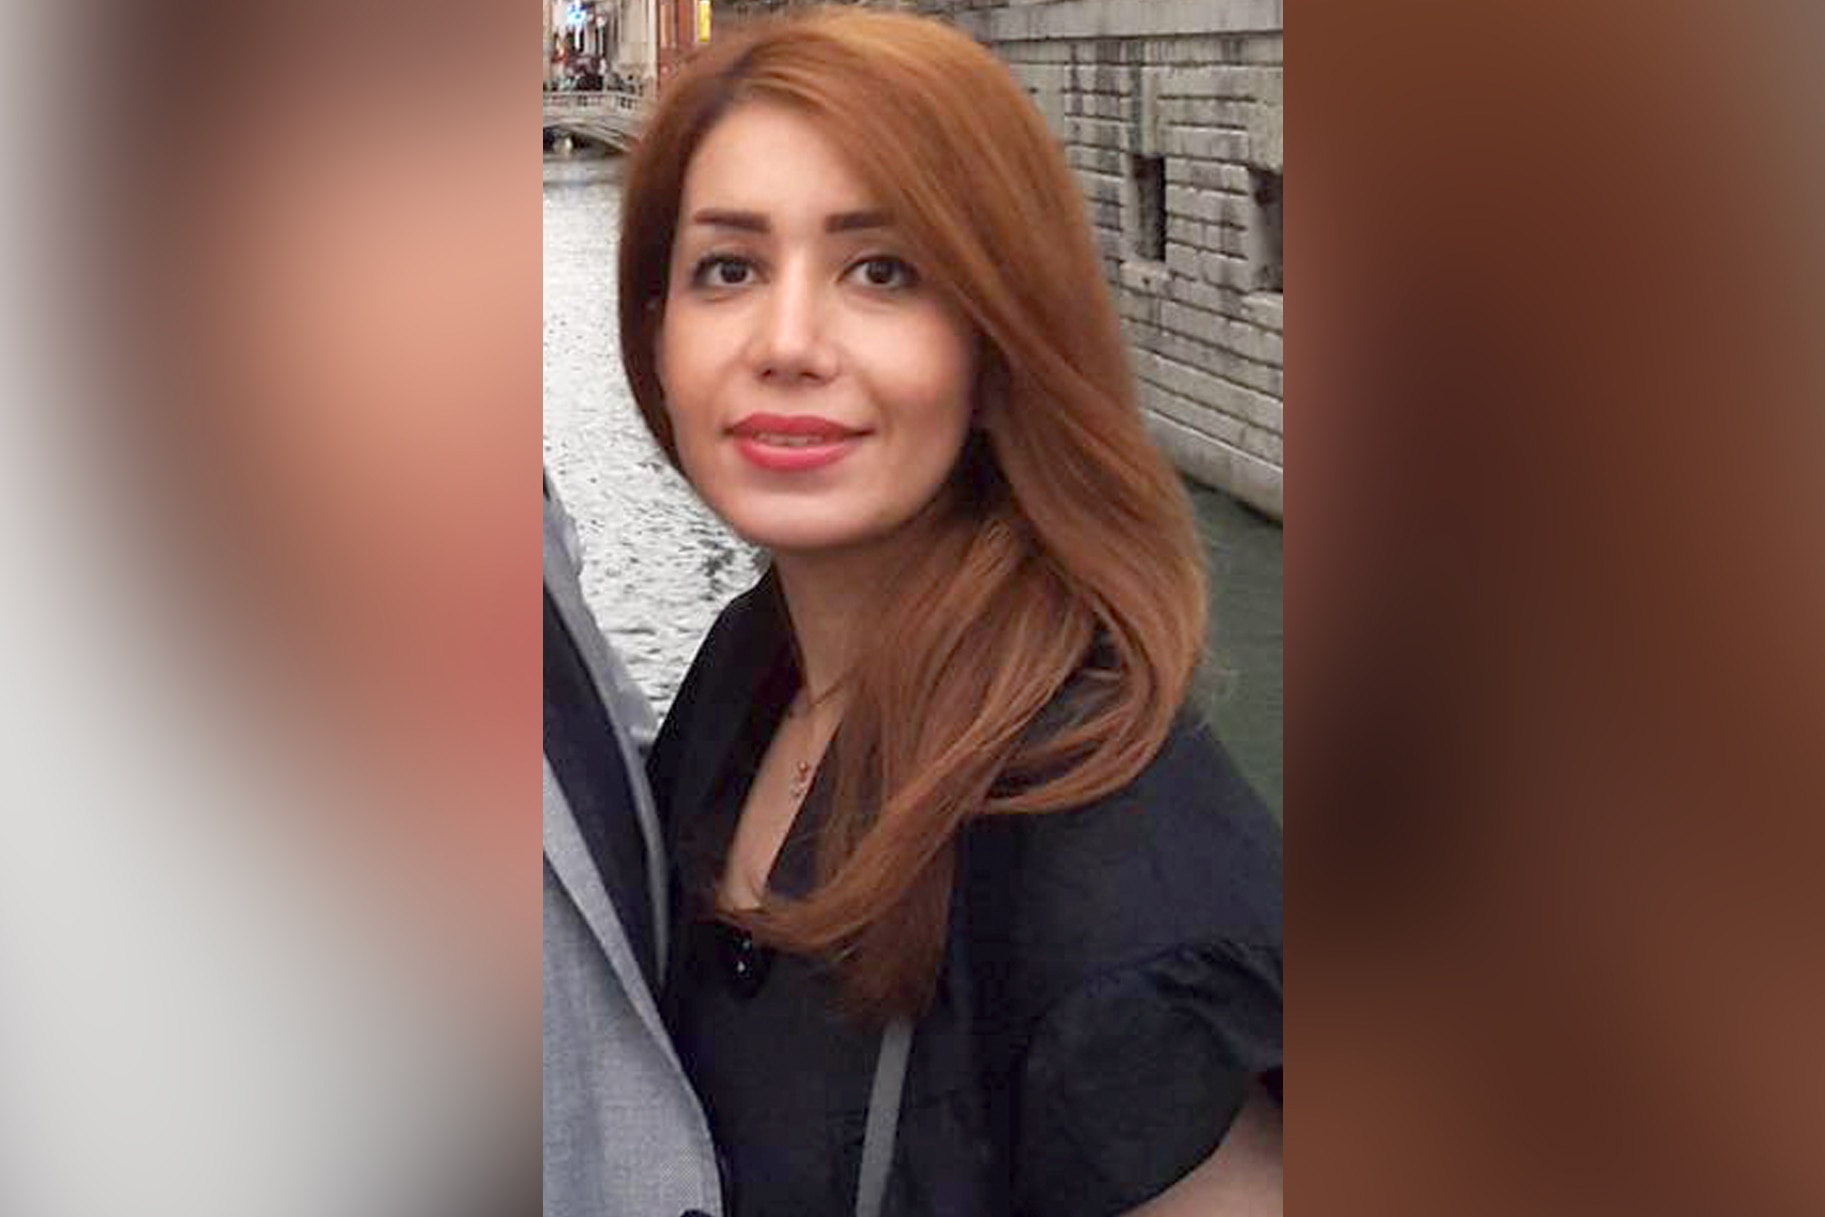 A photo of missing woman Elnaz Hajtamiri